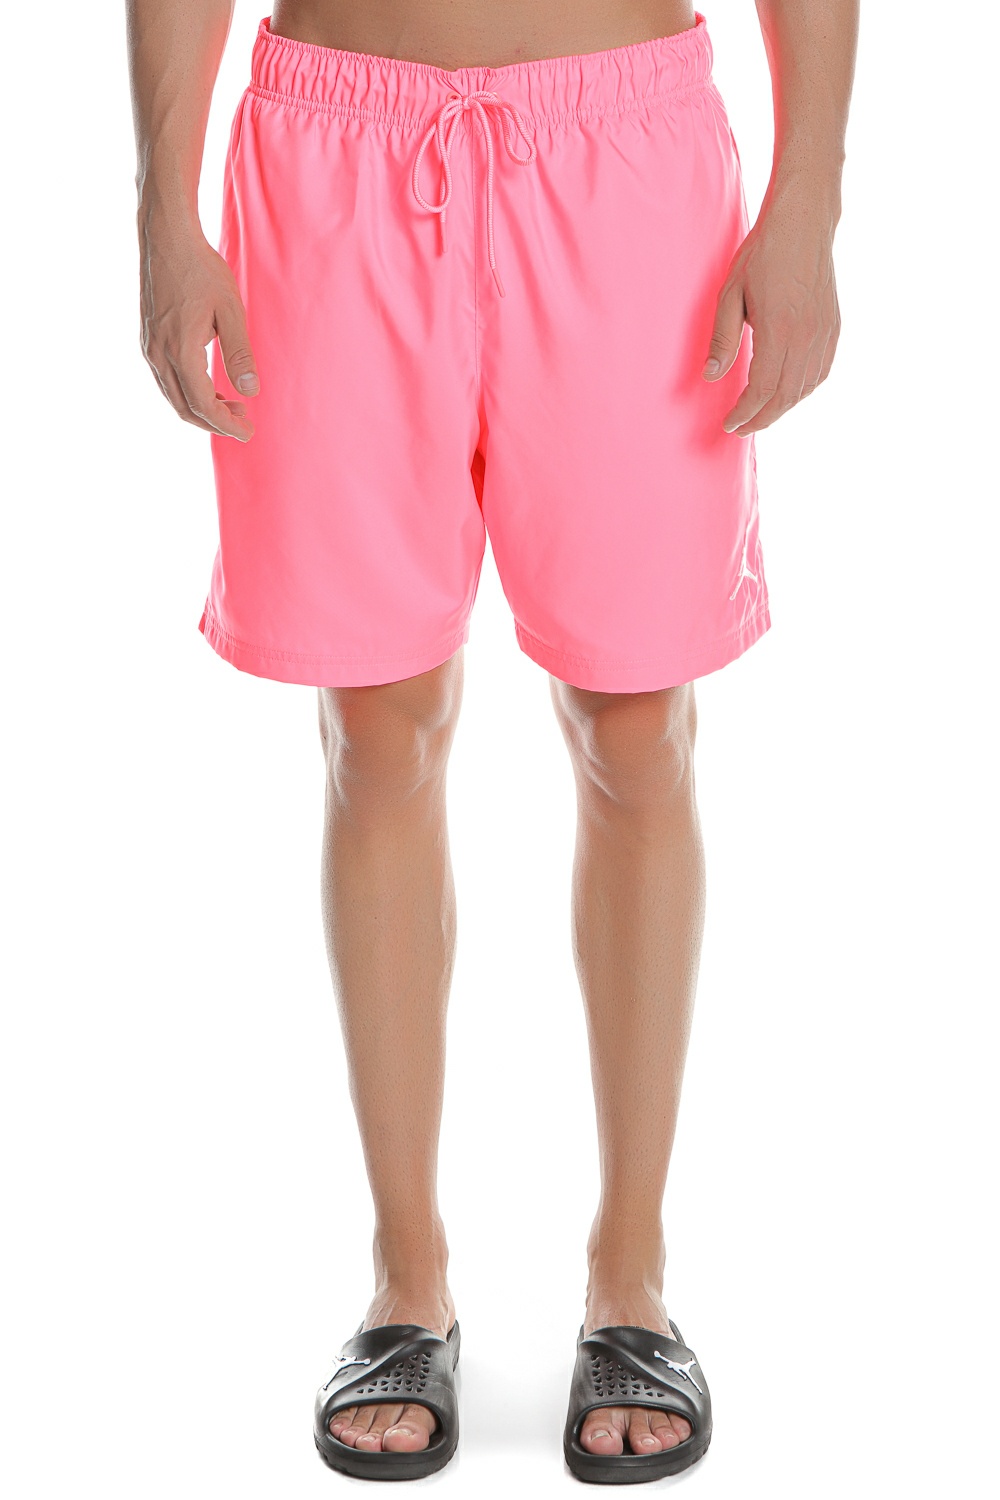 Ανδρικά/Ρούχα/Σορτς-Βερμούδες/Αθλητικά NIKE - Ανδρικό μαγιό σορτς NIKE J JUMPMAN POOLSIDE ροζ